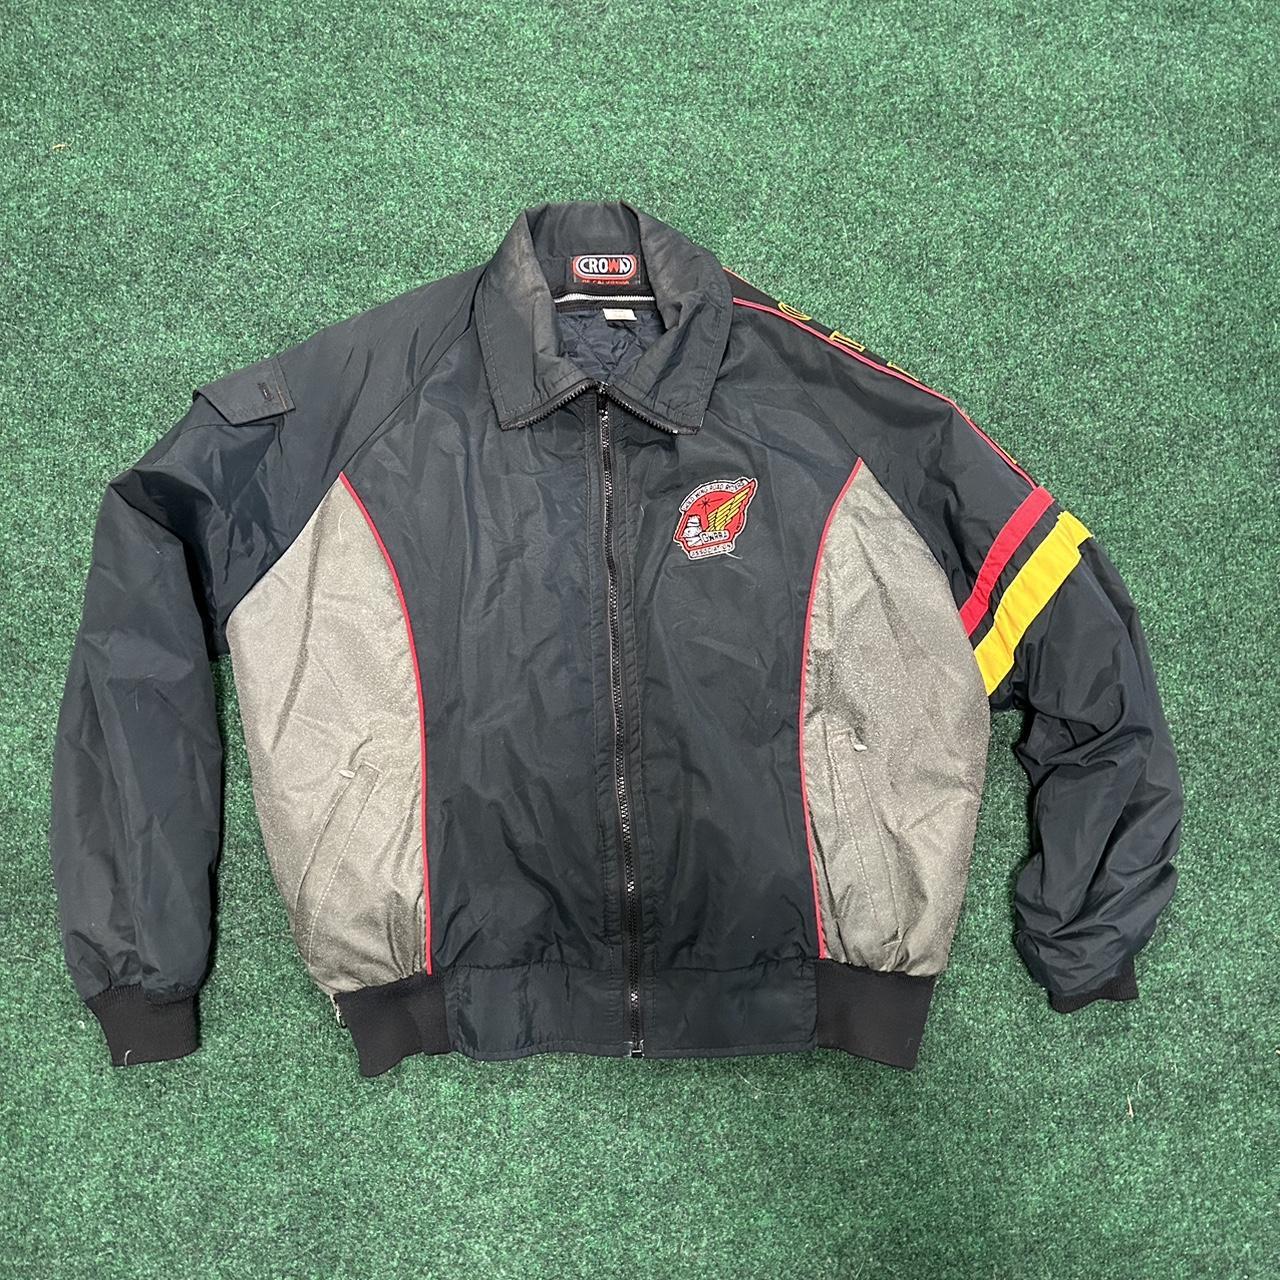 Vintage biker jacket in great condition Size Large... - Depop